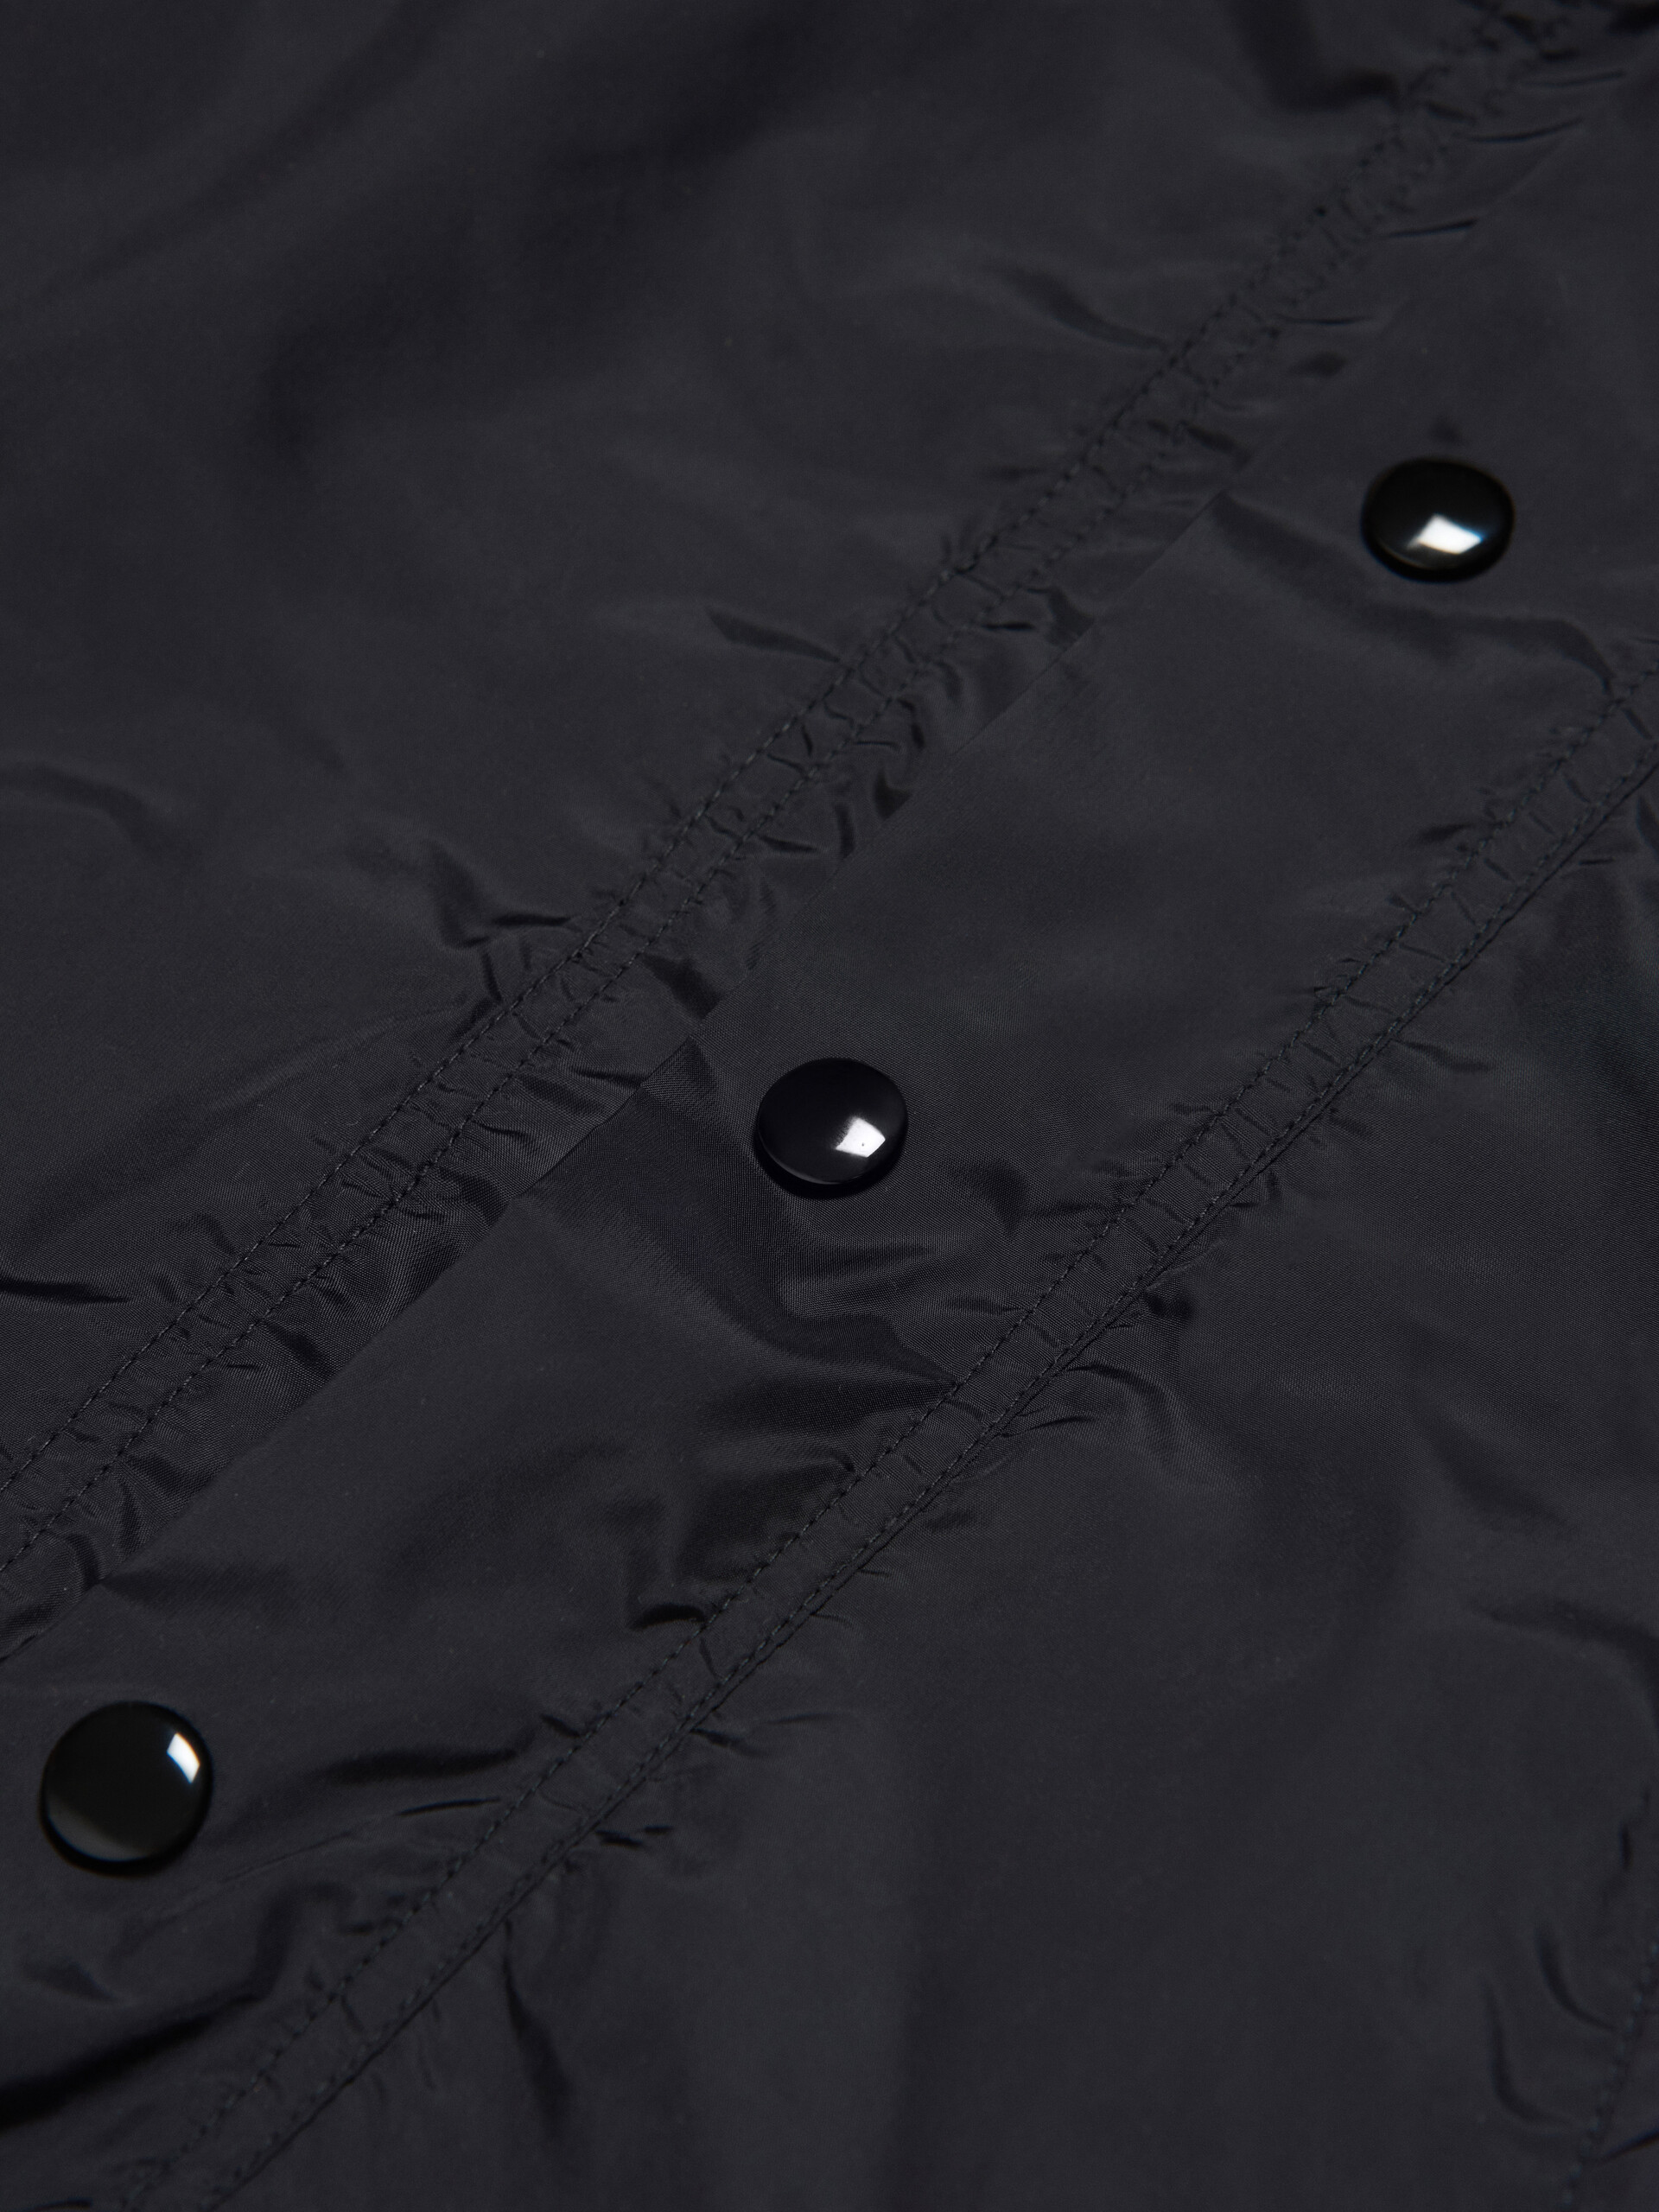 ブラック フード付き ウォータープルーフジャケット スリーブにロゴ入り - ジャケット - Image 4